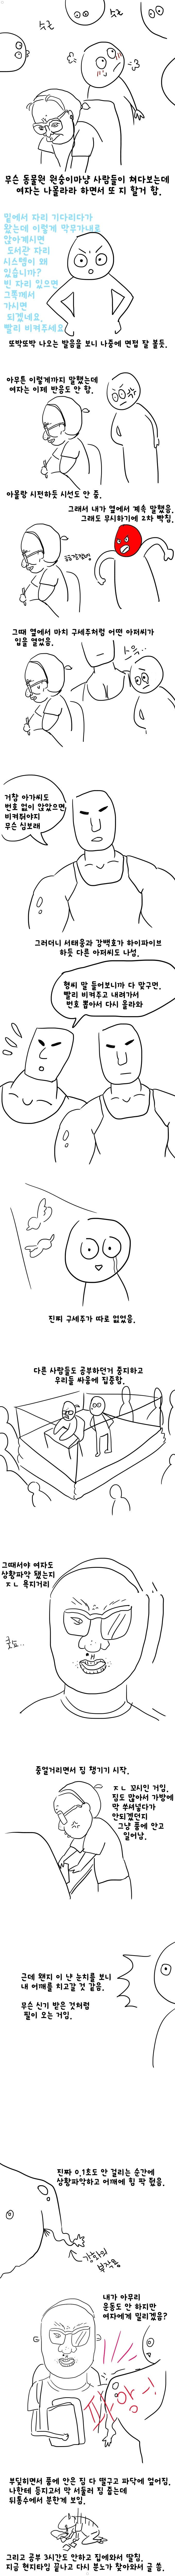 흔한 도서관에서 극혐녀 만난 썰만화 상상 이미지 #3